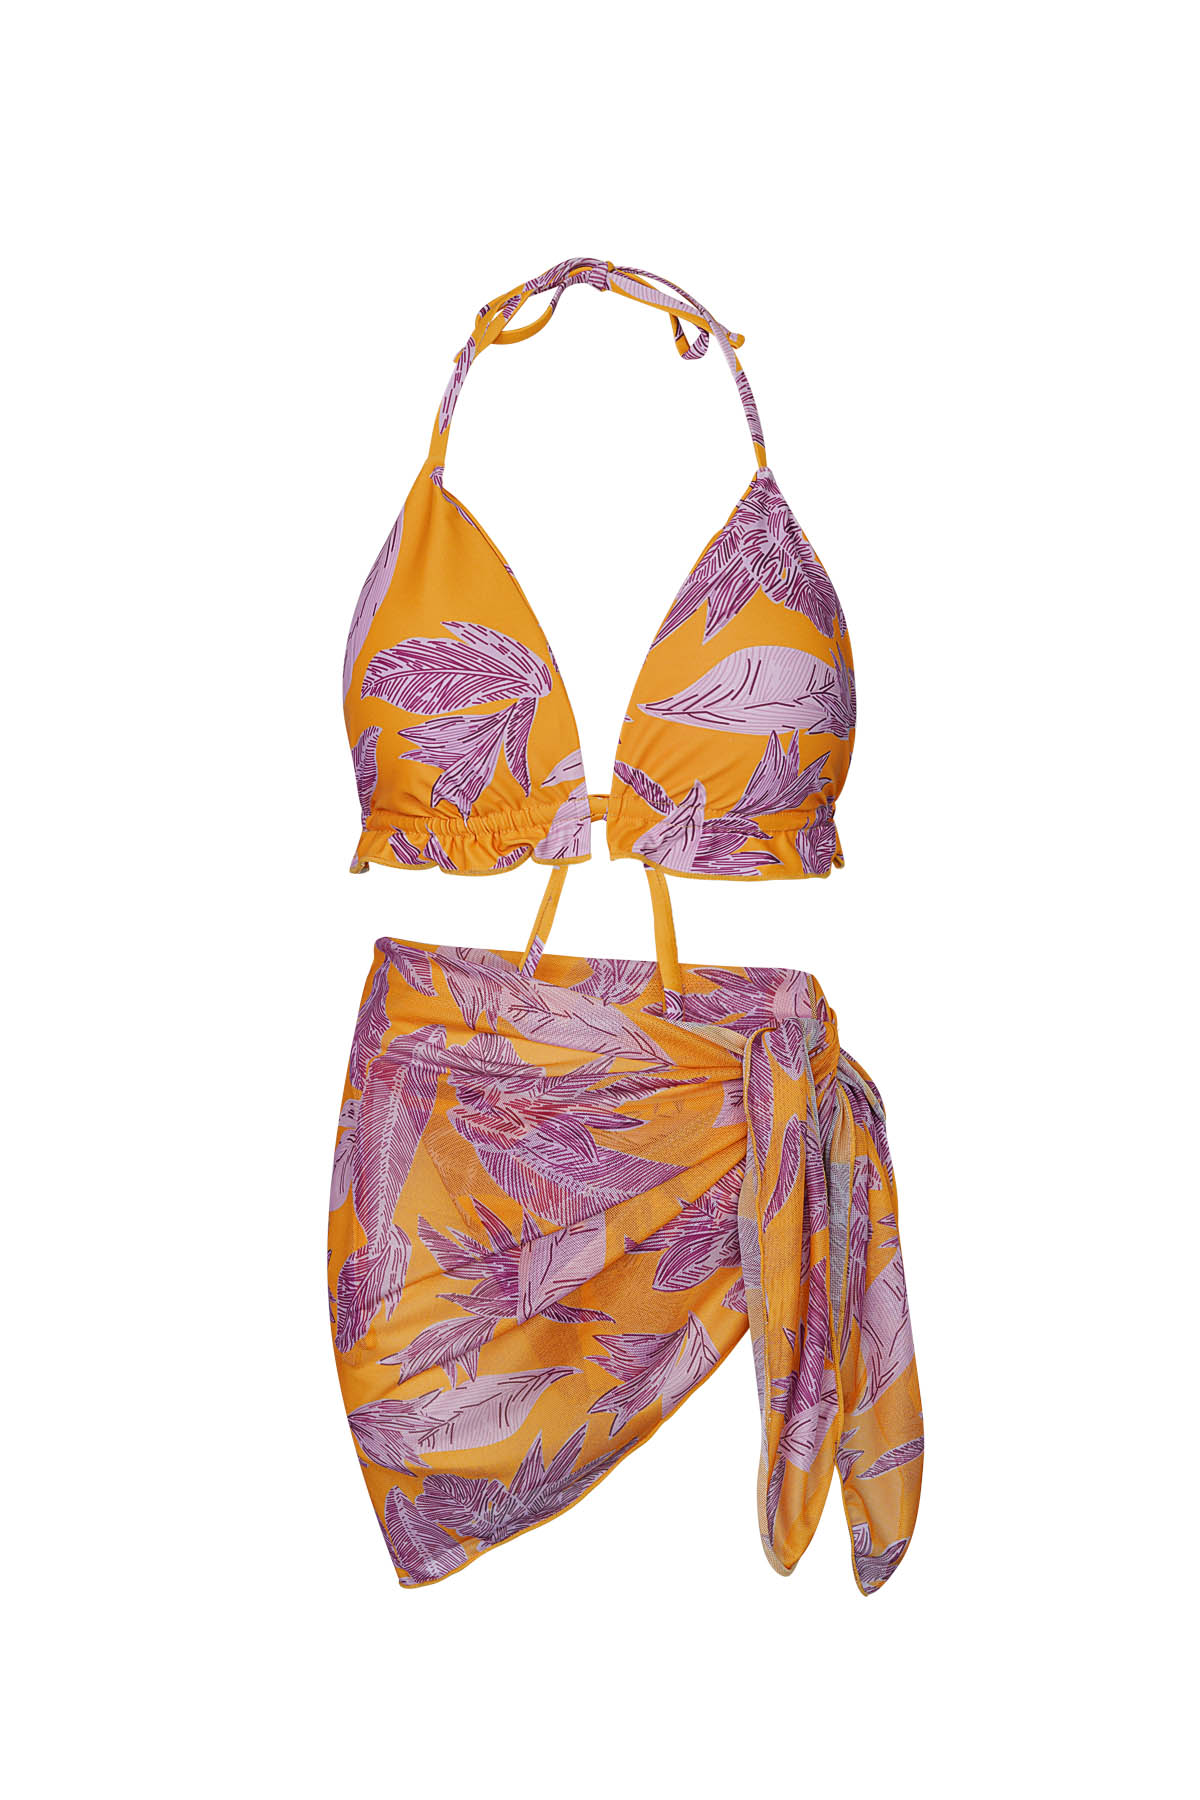 Bikini blaadjes print - oranje/paars L 